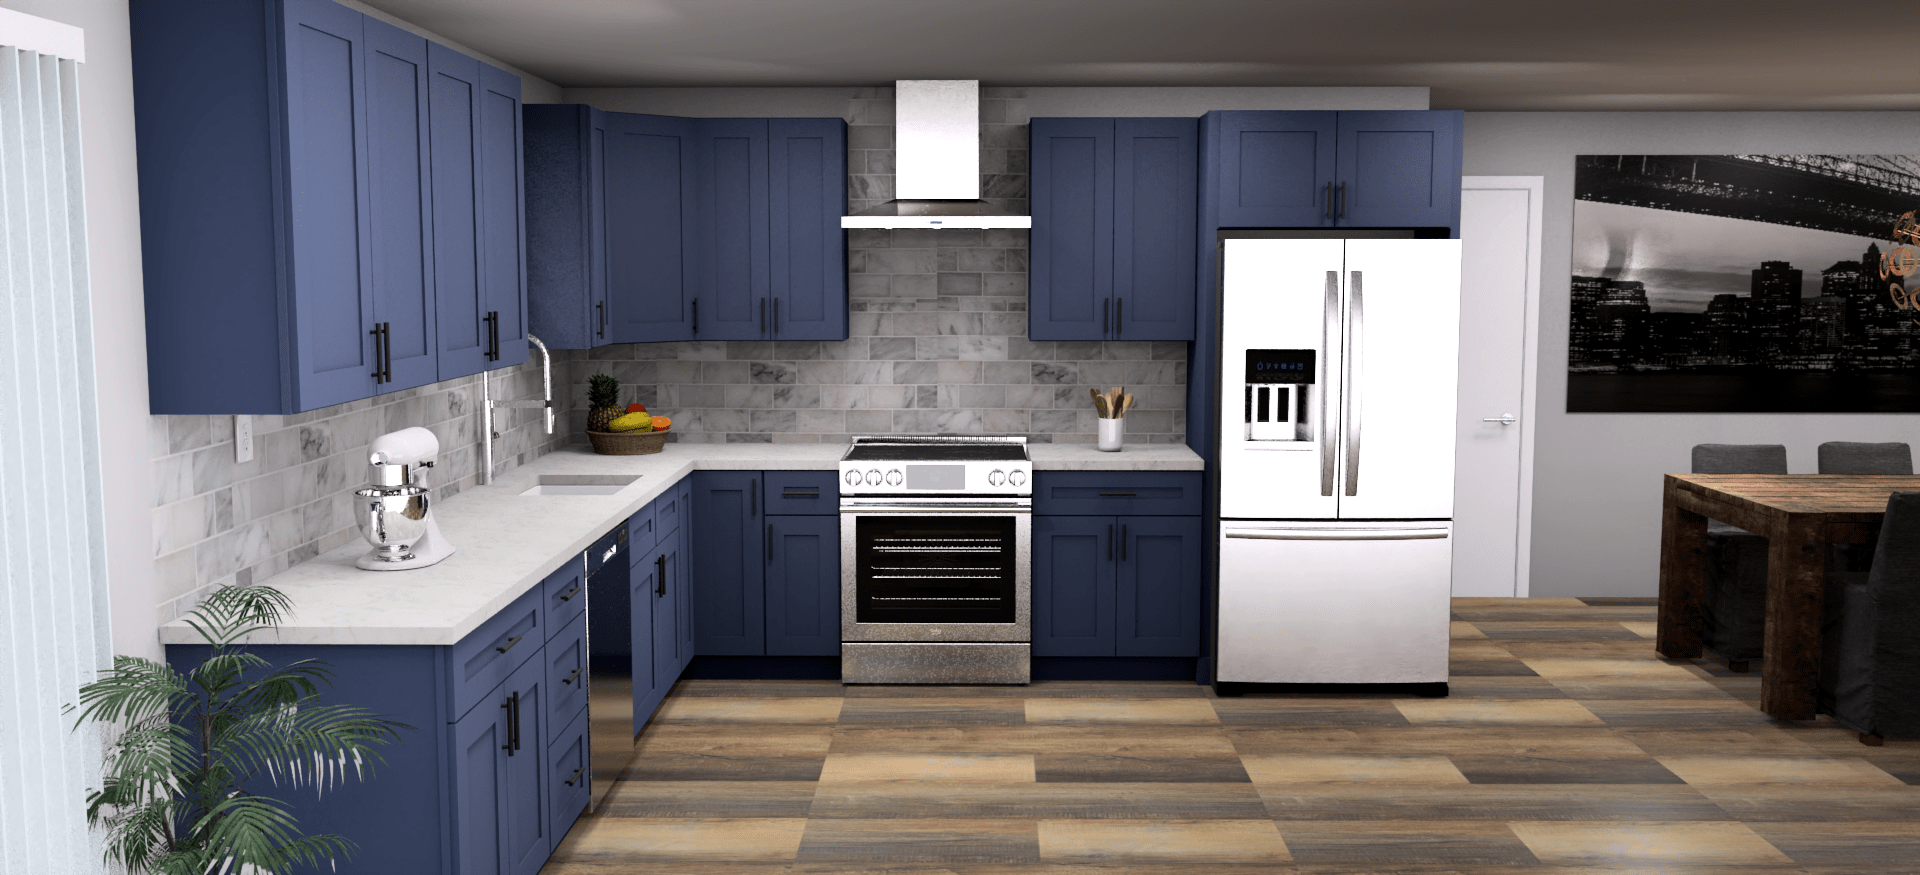 LessCare Danbury Blue 12 x 12 L Shaped Kitchen Front Layout Photo